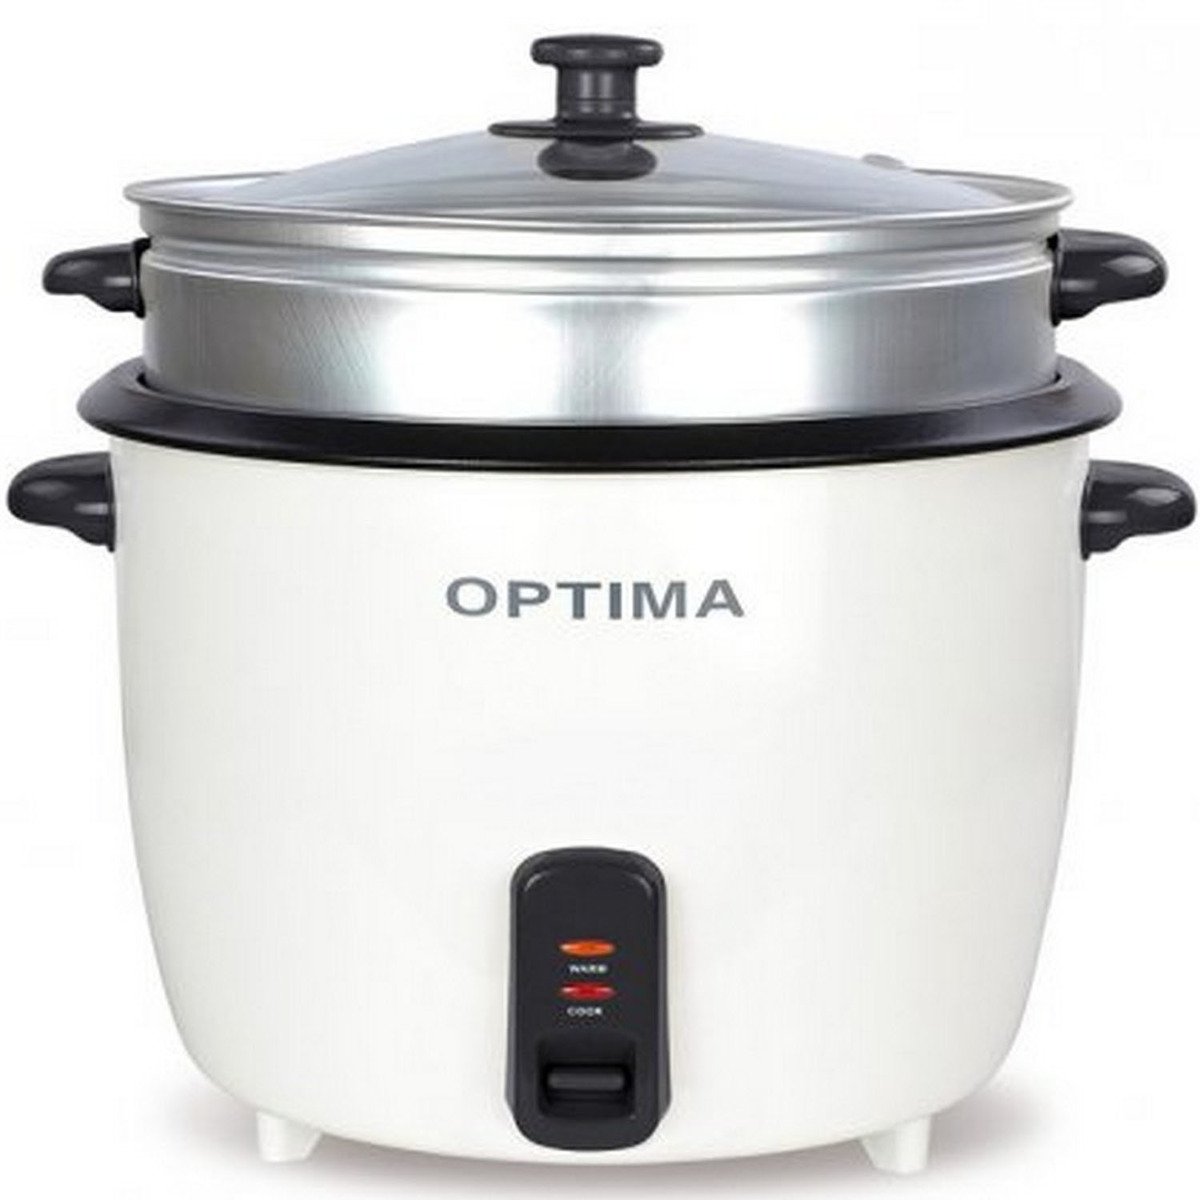 أوبتيما قدر طبخ كهربائي 1.8 لتر RC700